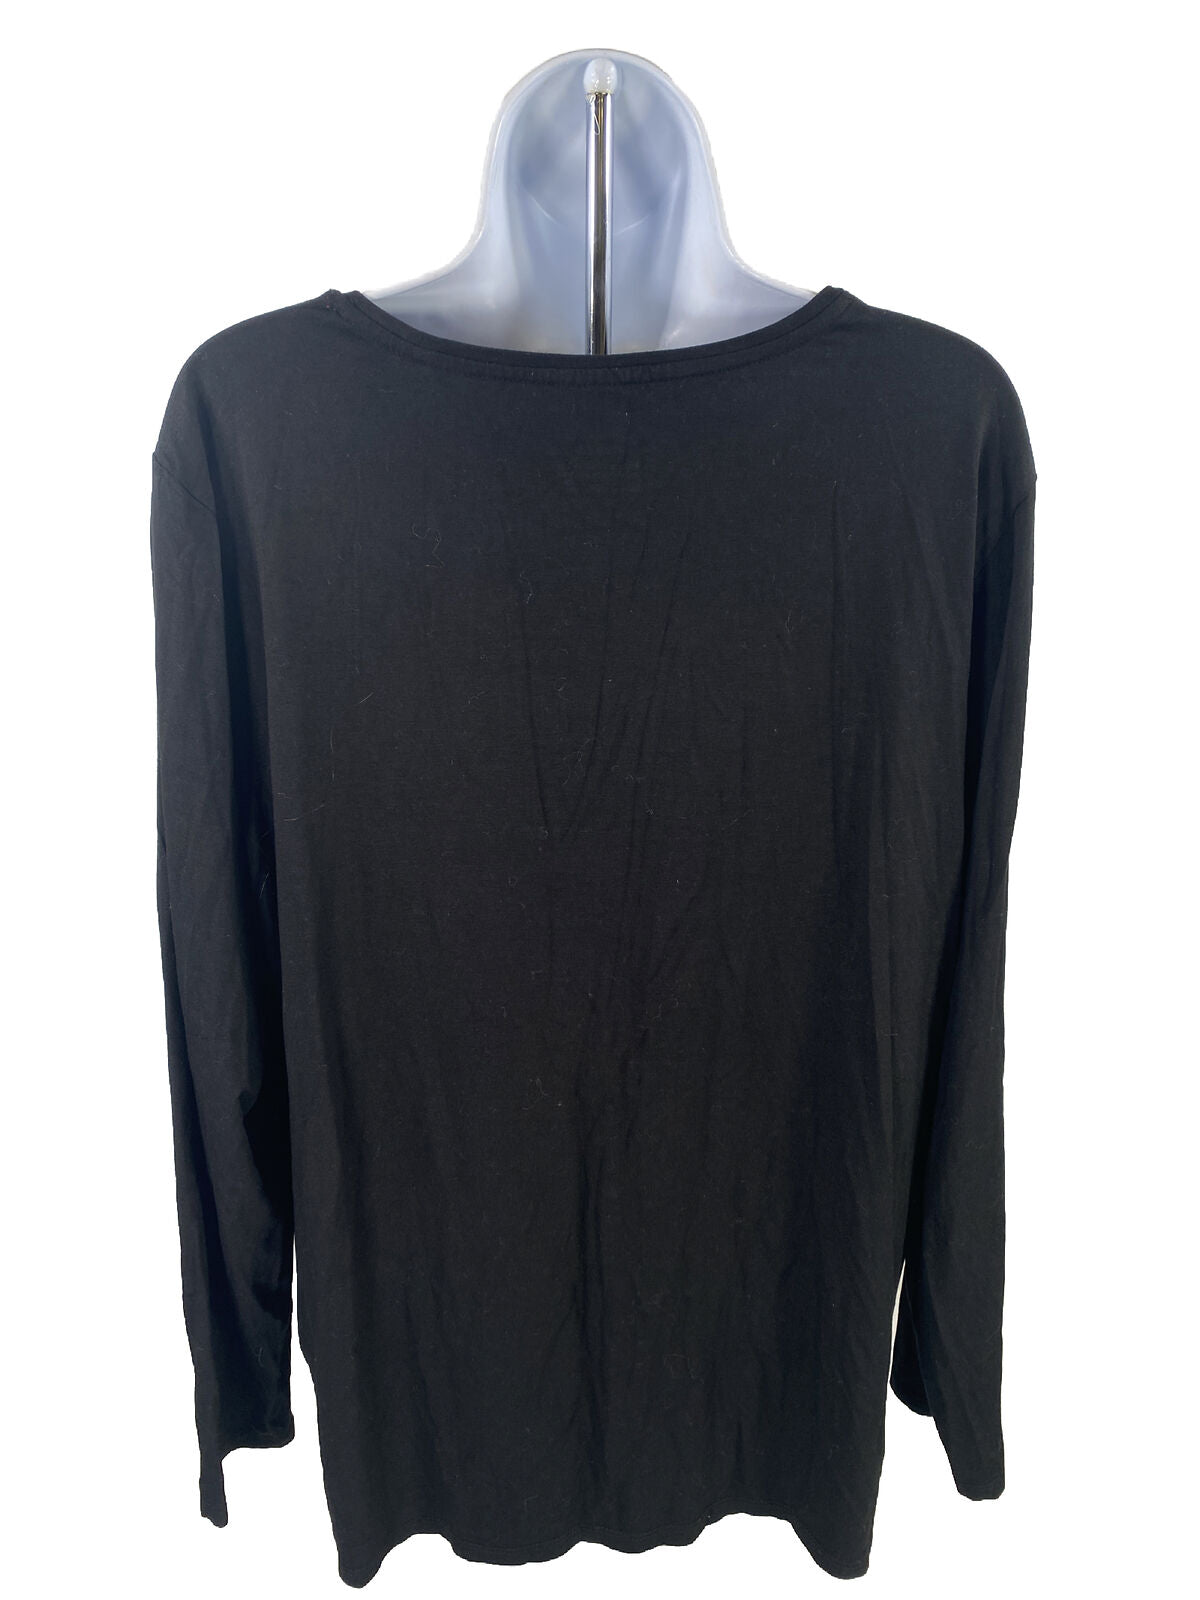 Chico's Camiseta negra de manga larga para mujer - 3/US XL